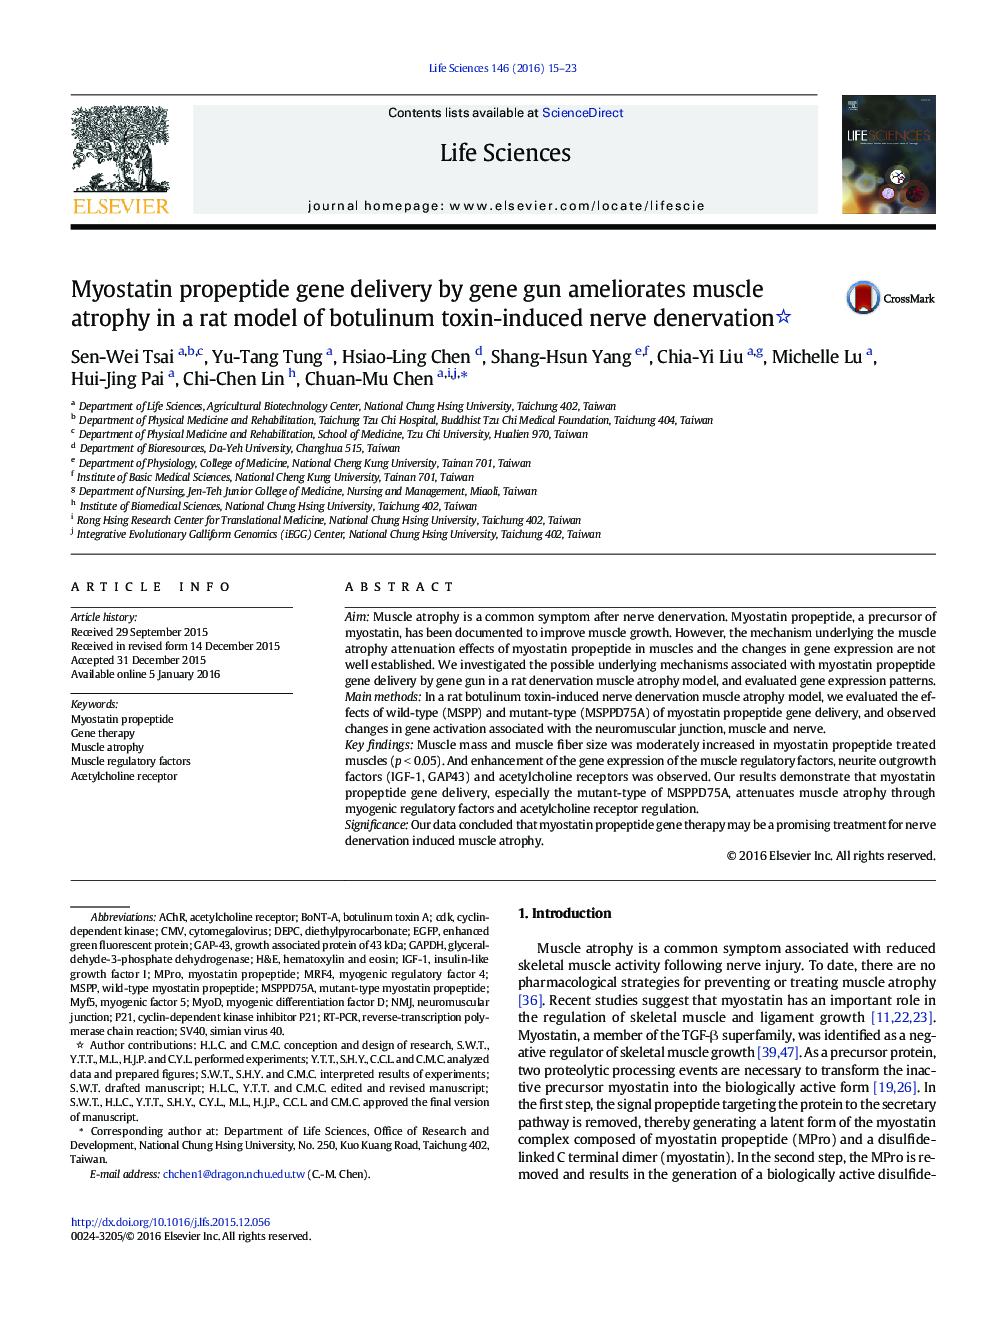 Myostatin propeptide gene delivery by gene gun ameliorates muscle atrophy in a rat model of botulinum toxin-induced nerve denervation 